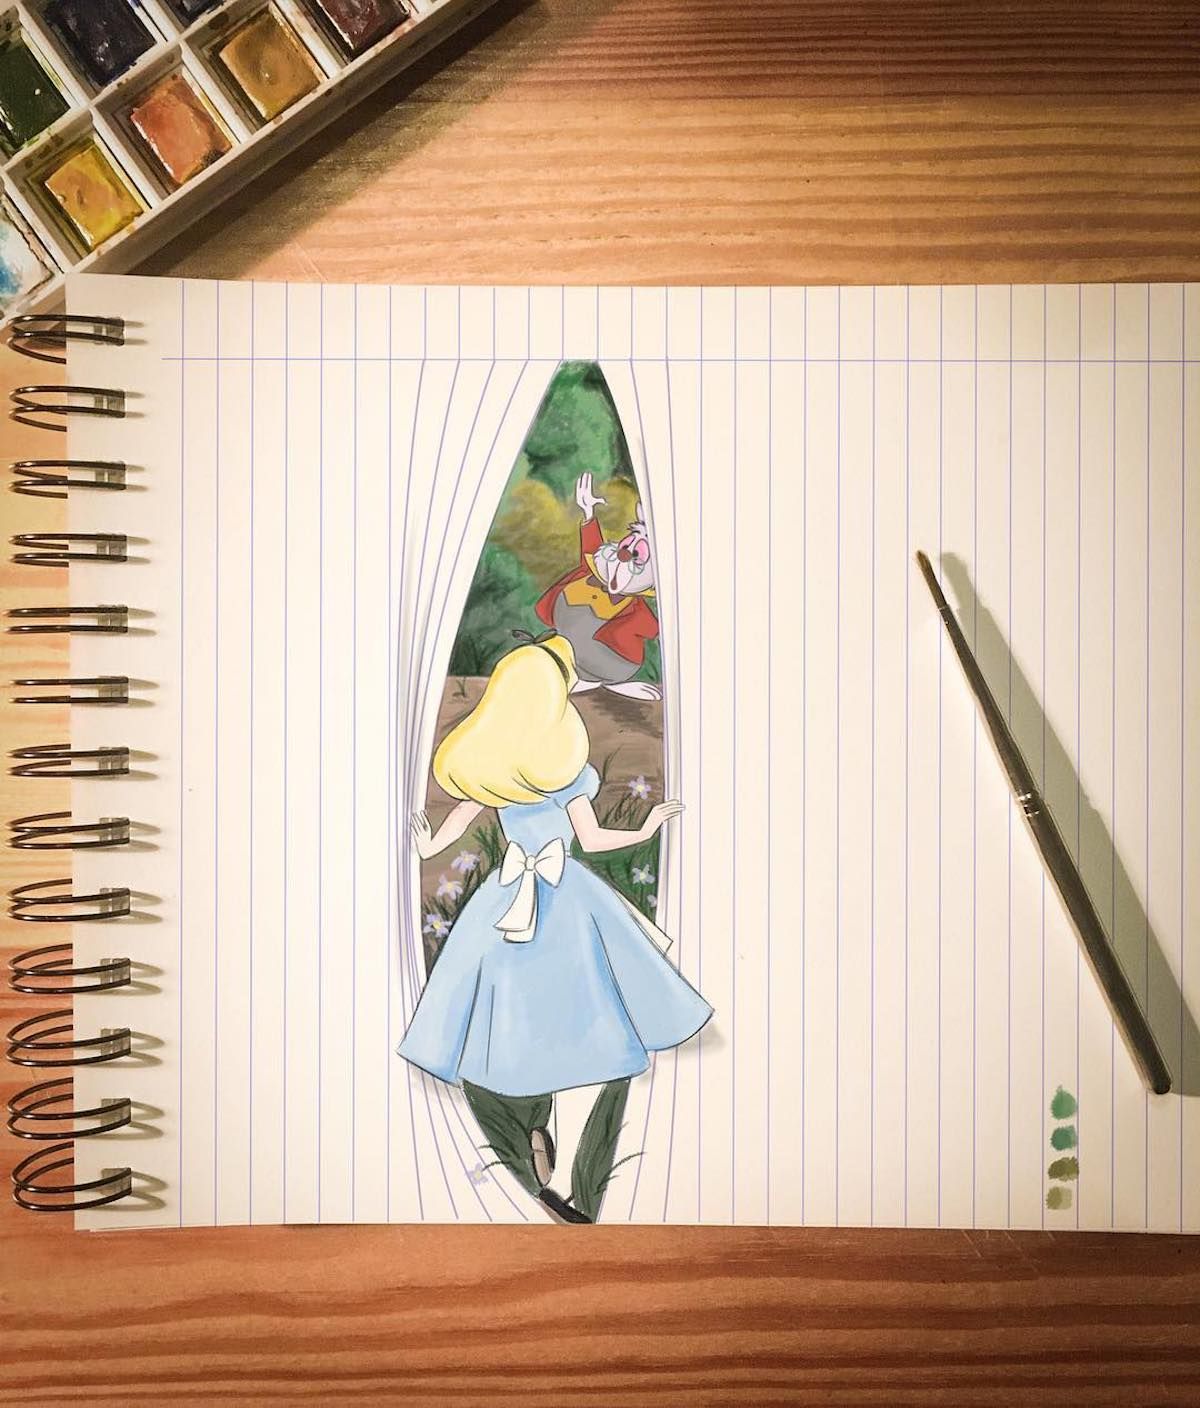 Cet illustrateur joue avec les lignes des cahiers pour donner vie aux personnages Disney